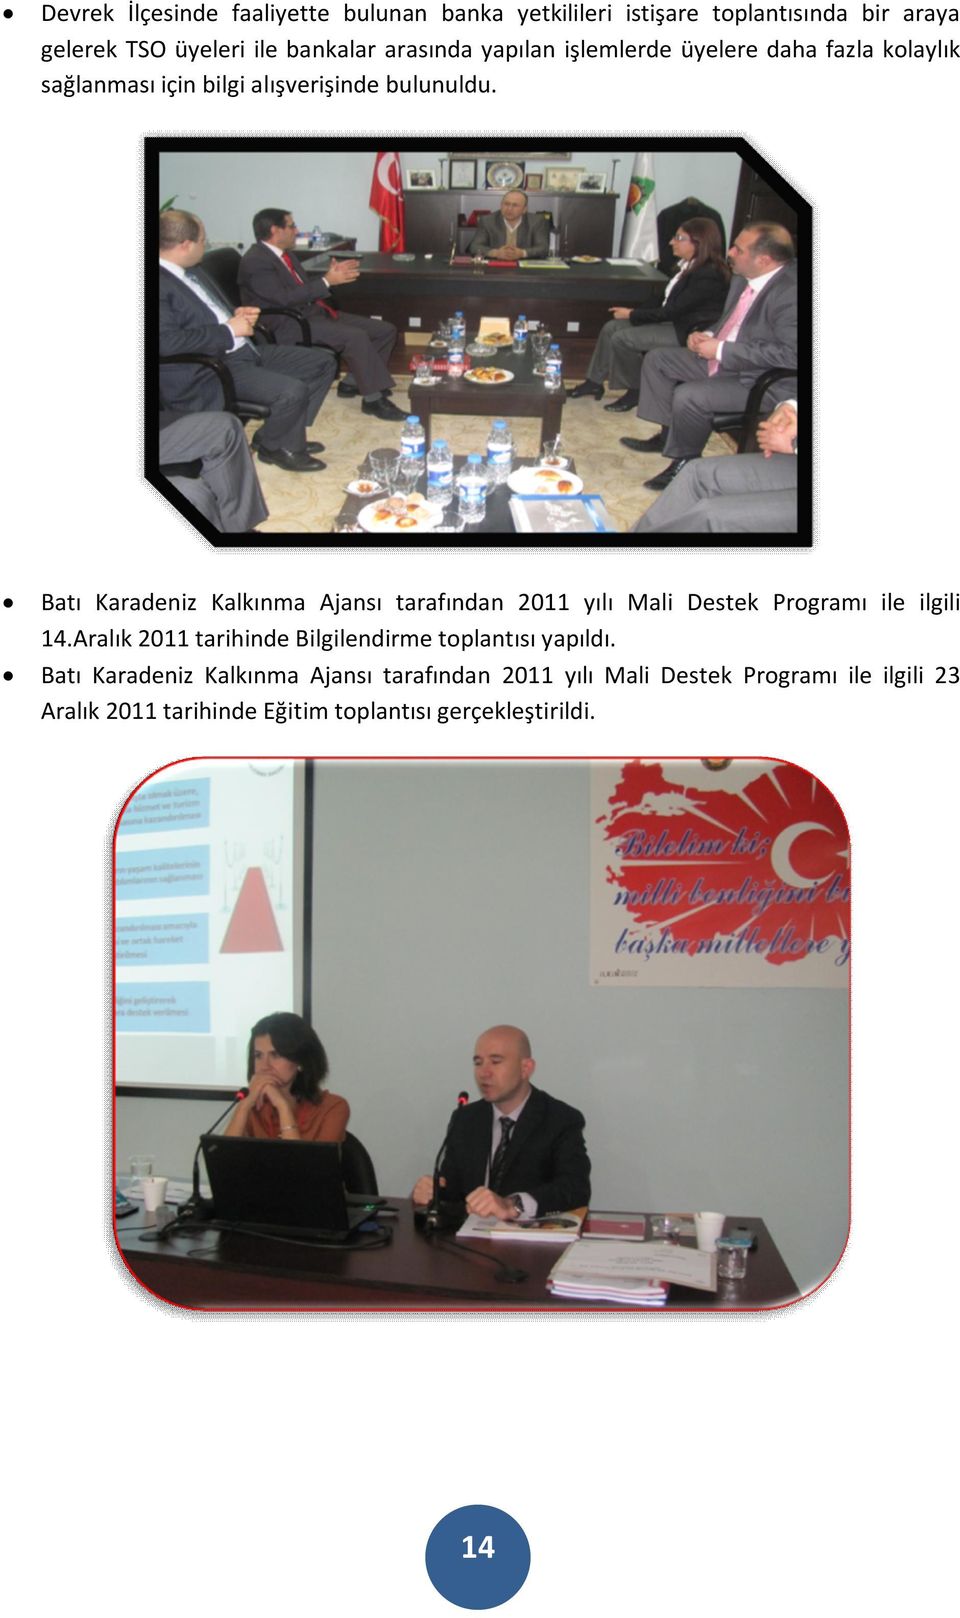 Batı Karadeniz Kalkınma Ajansı tarafından 2011 yılı Mali Destek Programı ile ilgili 14.